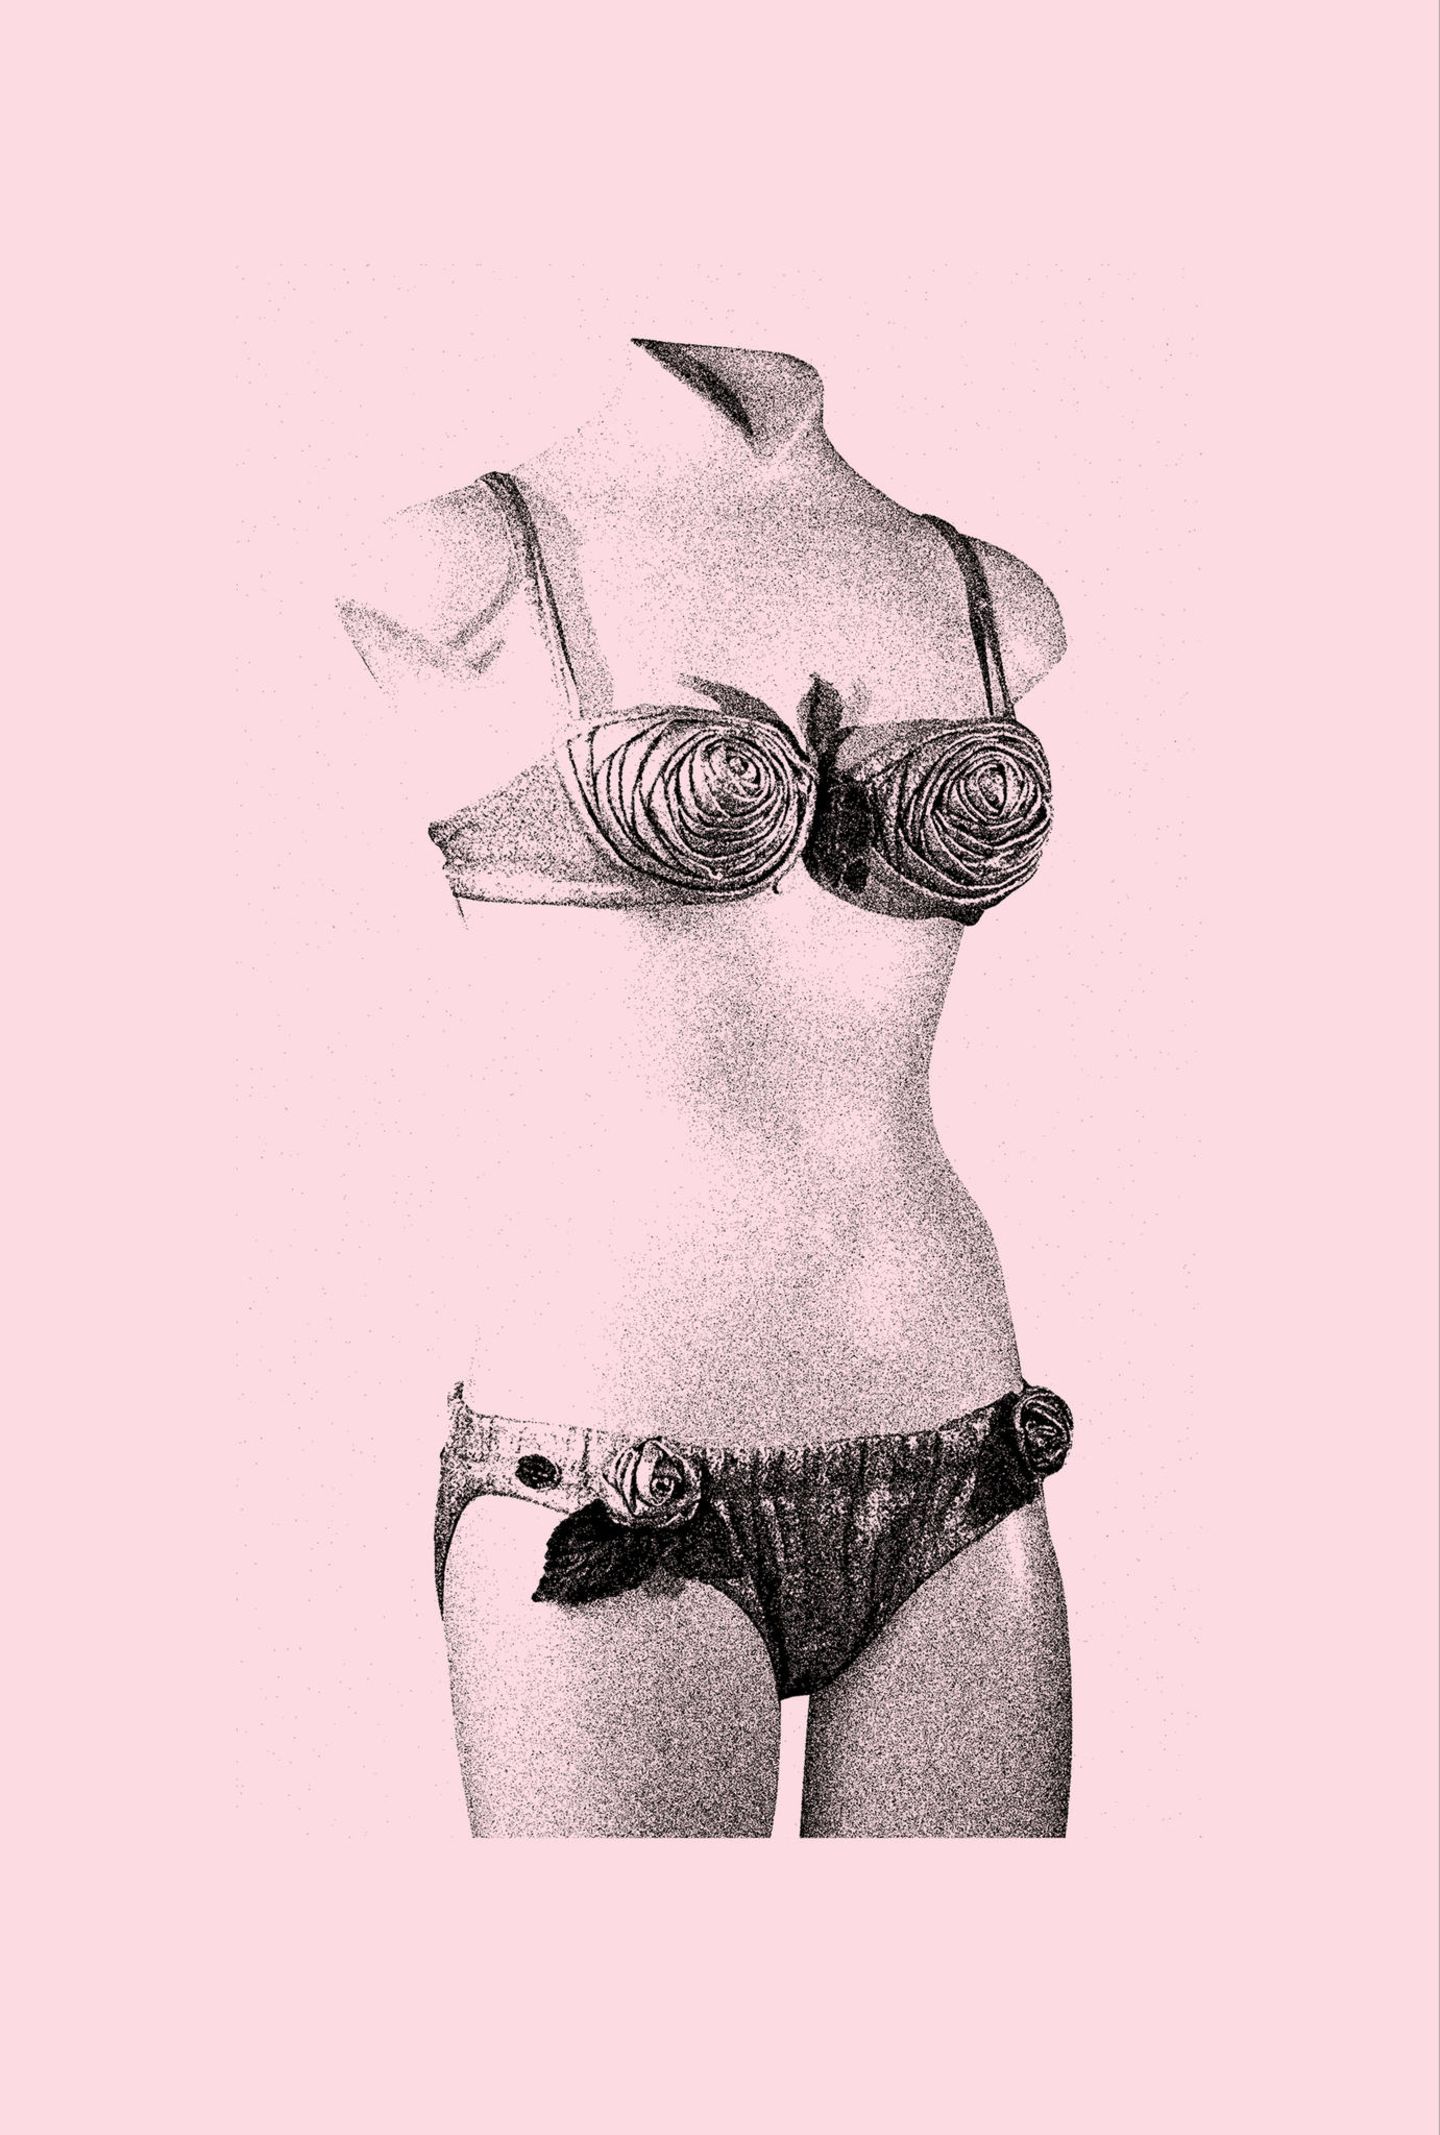 Ein Badekostüm bestehend aus zwei Teilen. Das Gegenstück des Badeanzugs – der Bikini. 1946, in einem Pariser Schwimmbad, gab die Revue-Tänzerin Micheline Bernardini, freie Sicht auf ihren Bauchnabel. Sie trug das Design des Erfinders Louis Réard. Der Stoff war kein gewöhnlicher, er hatte Zeitungsausschnitte des erfolgreichen Nucleartests, auf den Bikini Atollen aufgedruckt. Der Bikini war zu der Phase ein Symbol der Befreiung der Frau und ein Inbegriff für den Fortschritt.  Das abgebildete Modell leitete 1947 die zweite Renaissance des Bikinis ein. Er wurde nicht nur am Strand getragen ­– Frauen stolzierten auf Schönheitswettbewerben in ihm über den Laufsteg. Hier wurde er eher als Zeichen der Objektifizierung und Sexualisierung des weiblichen Körpers gesehen.